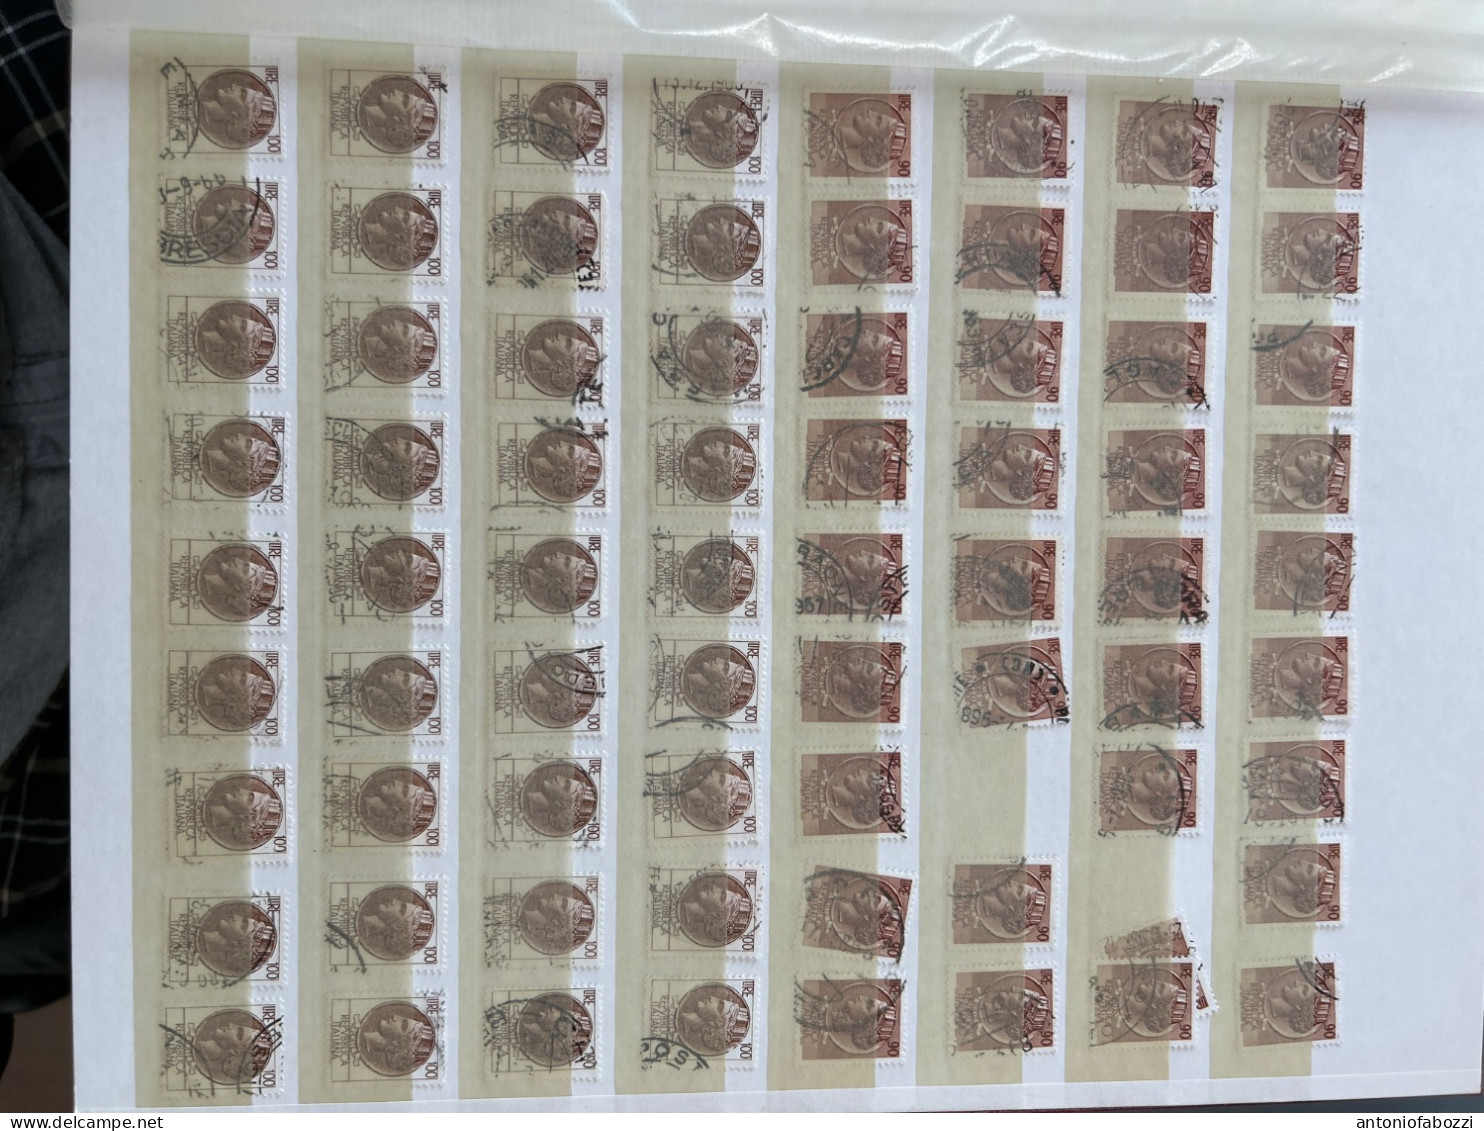 Interessante accumulo di centinaia di francobolli usati Serie Antica moneta siracusana in ottimo stato (vedi foto)